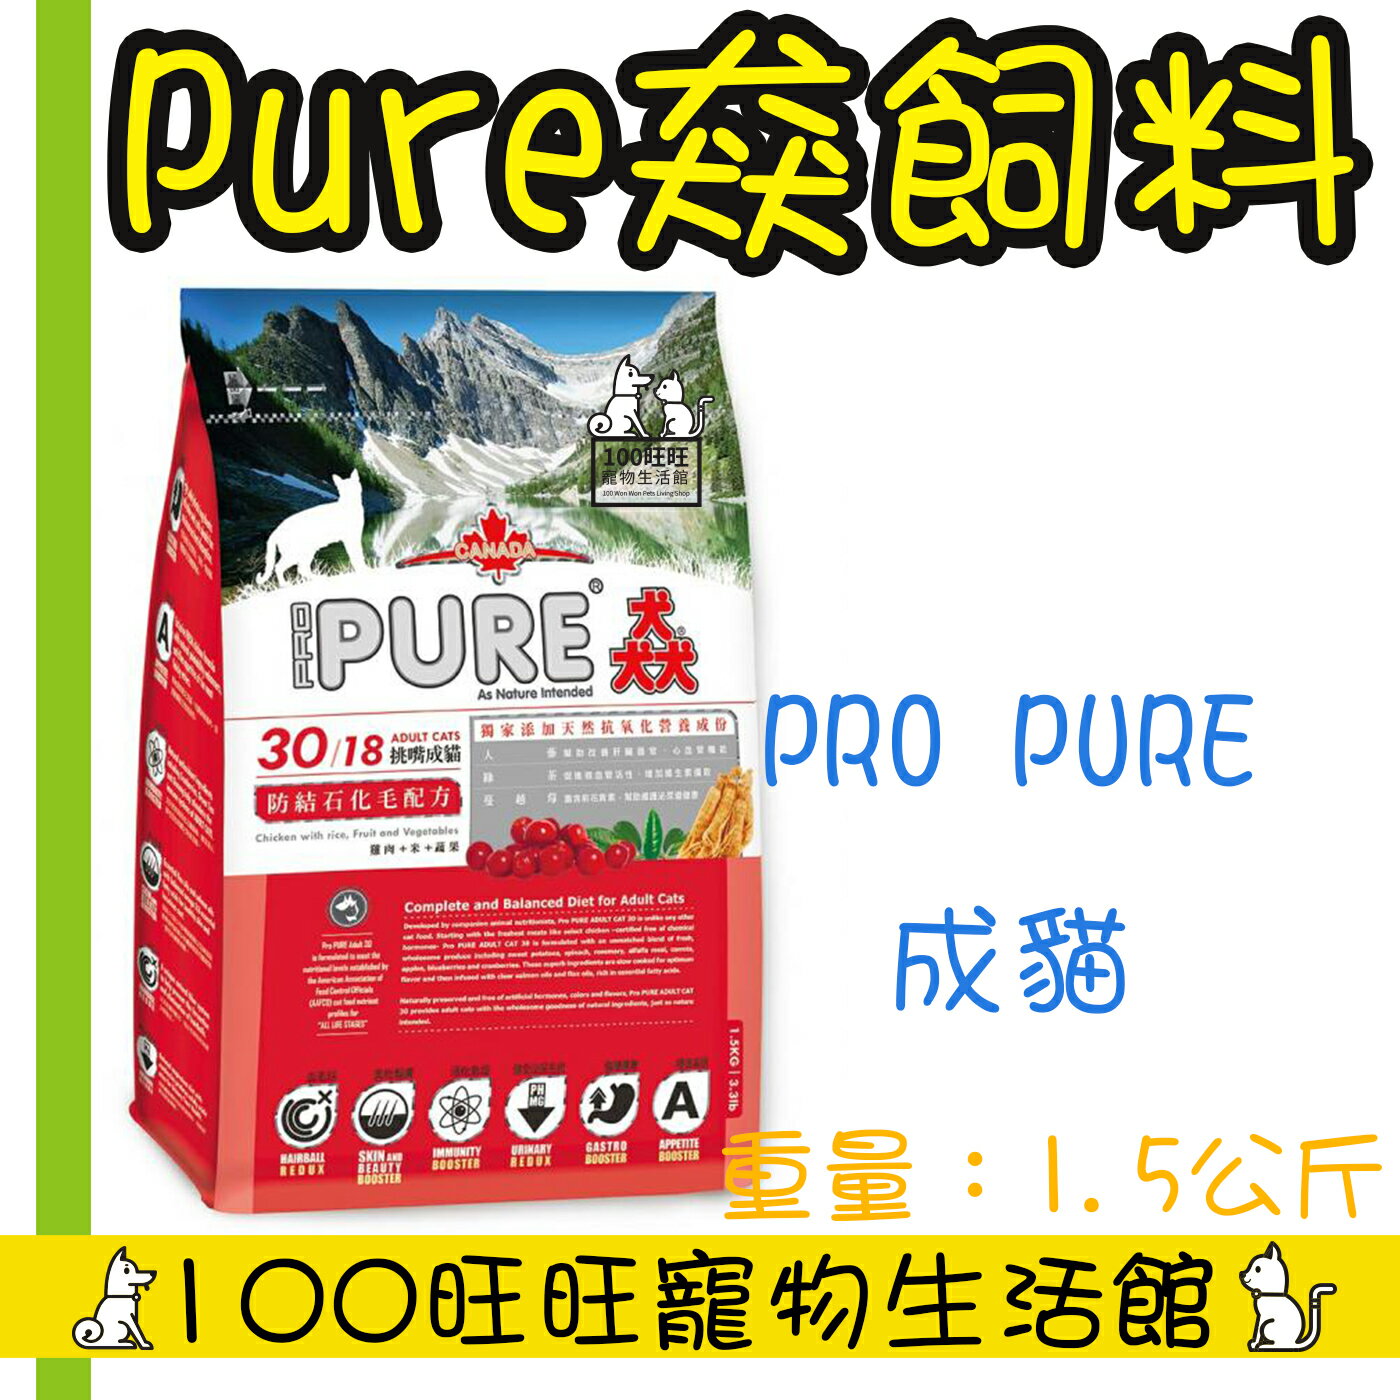 PURE 猋30/18挑嘴成貓防結石化毛配方 1.5KG